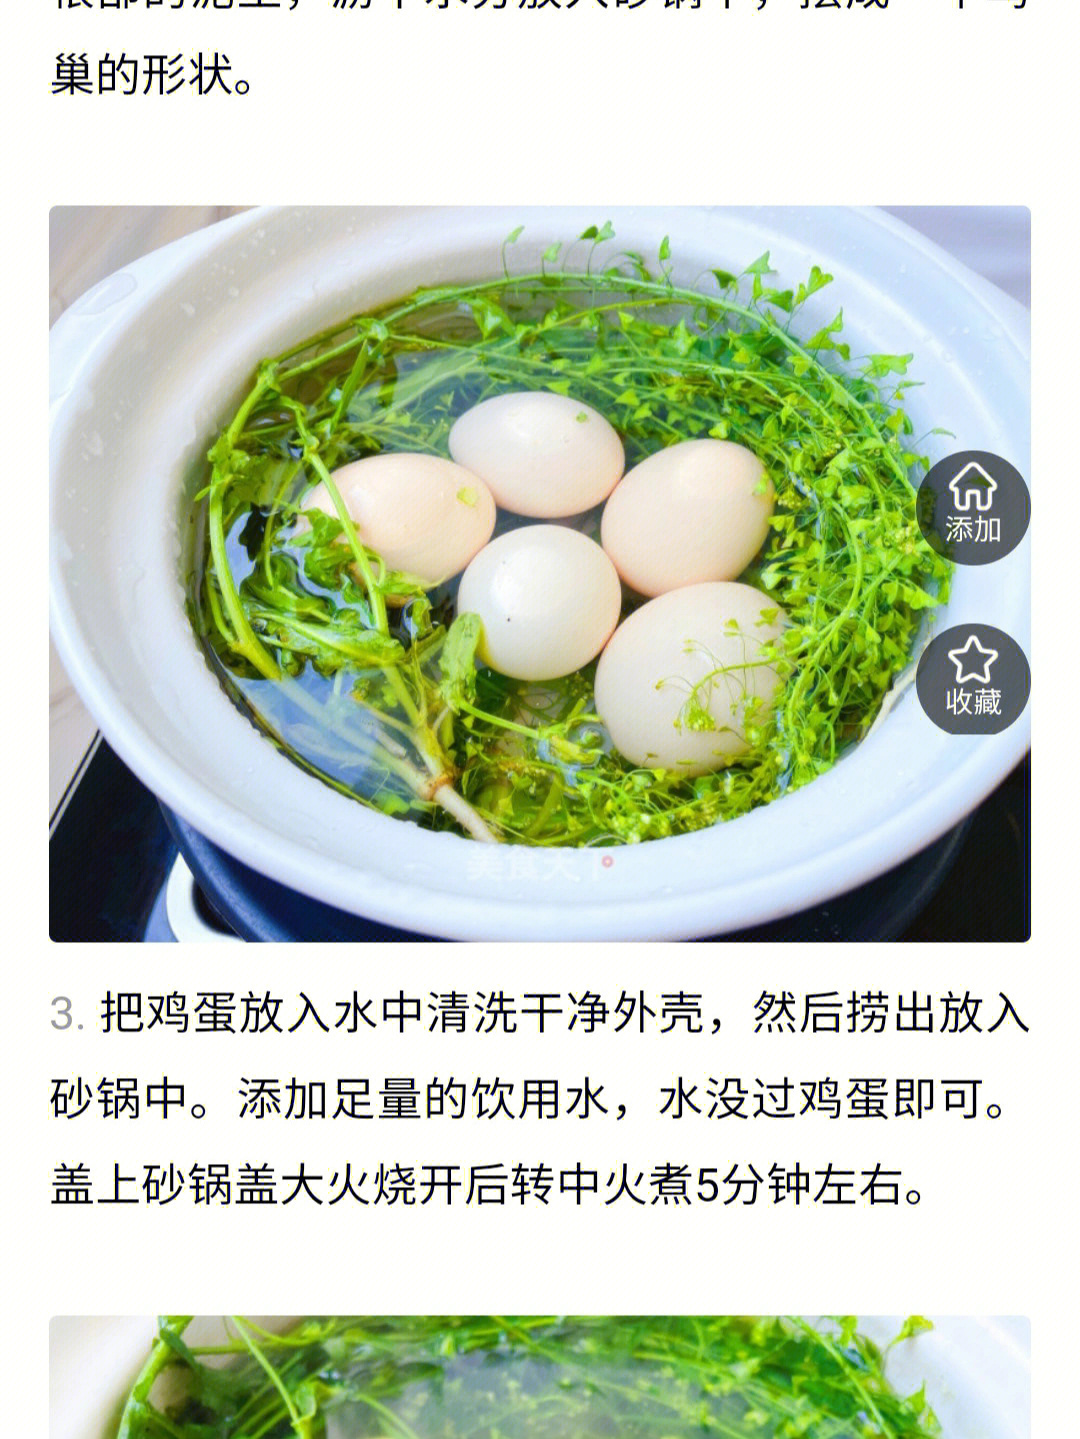 陈允斌荠菜煮鸡蛋图片